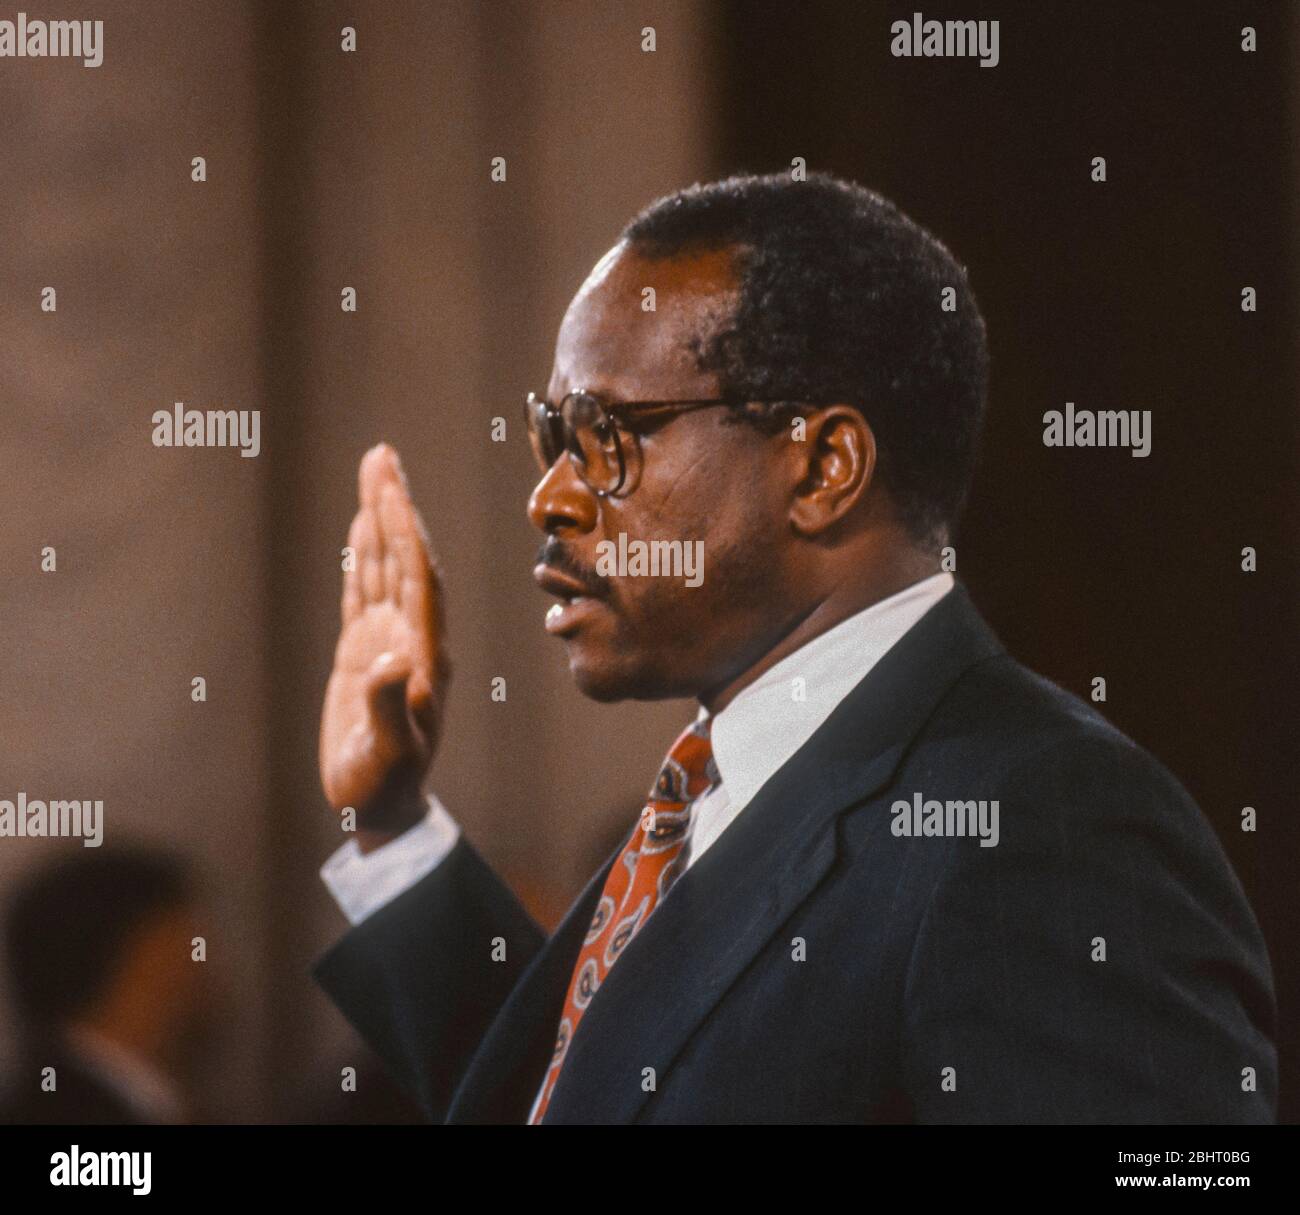 WASHINGTON, DC, USA, 11. OKTOBER 1991: Der Kandidat des Obersten Gerichtshofs Clarence Thomas legt vor dem Justizausschuss des Senats einen Eid ab. Stockfoto